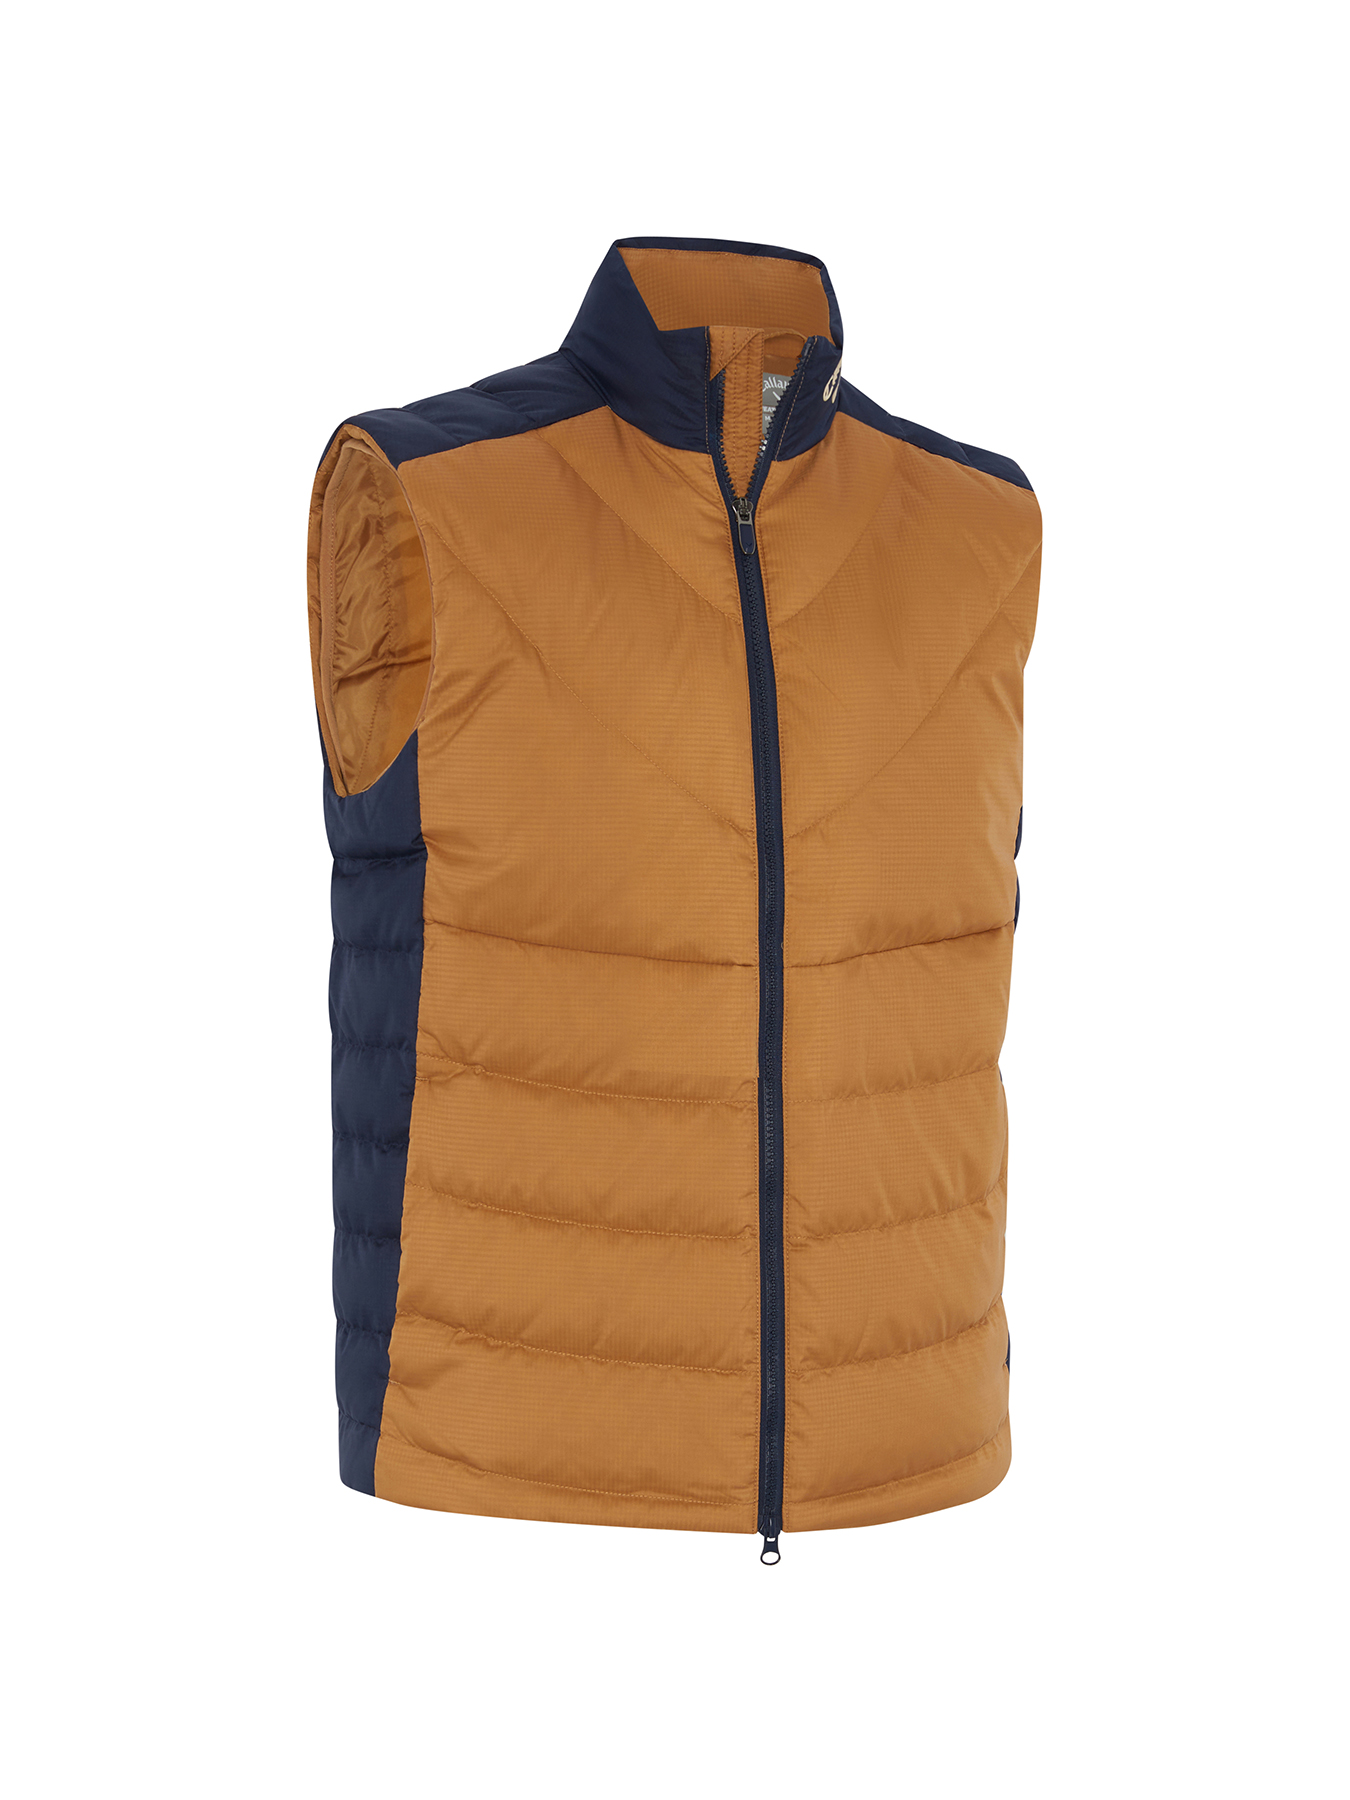 Levně Callaway Primaloft Premium pánská golfová vesta, hnědá/tmavě modrá